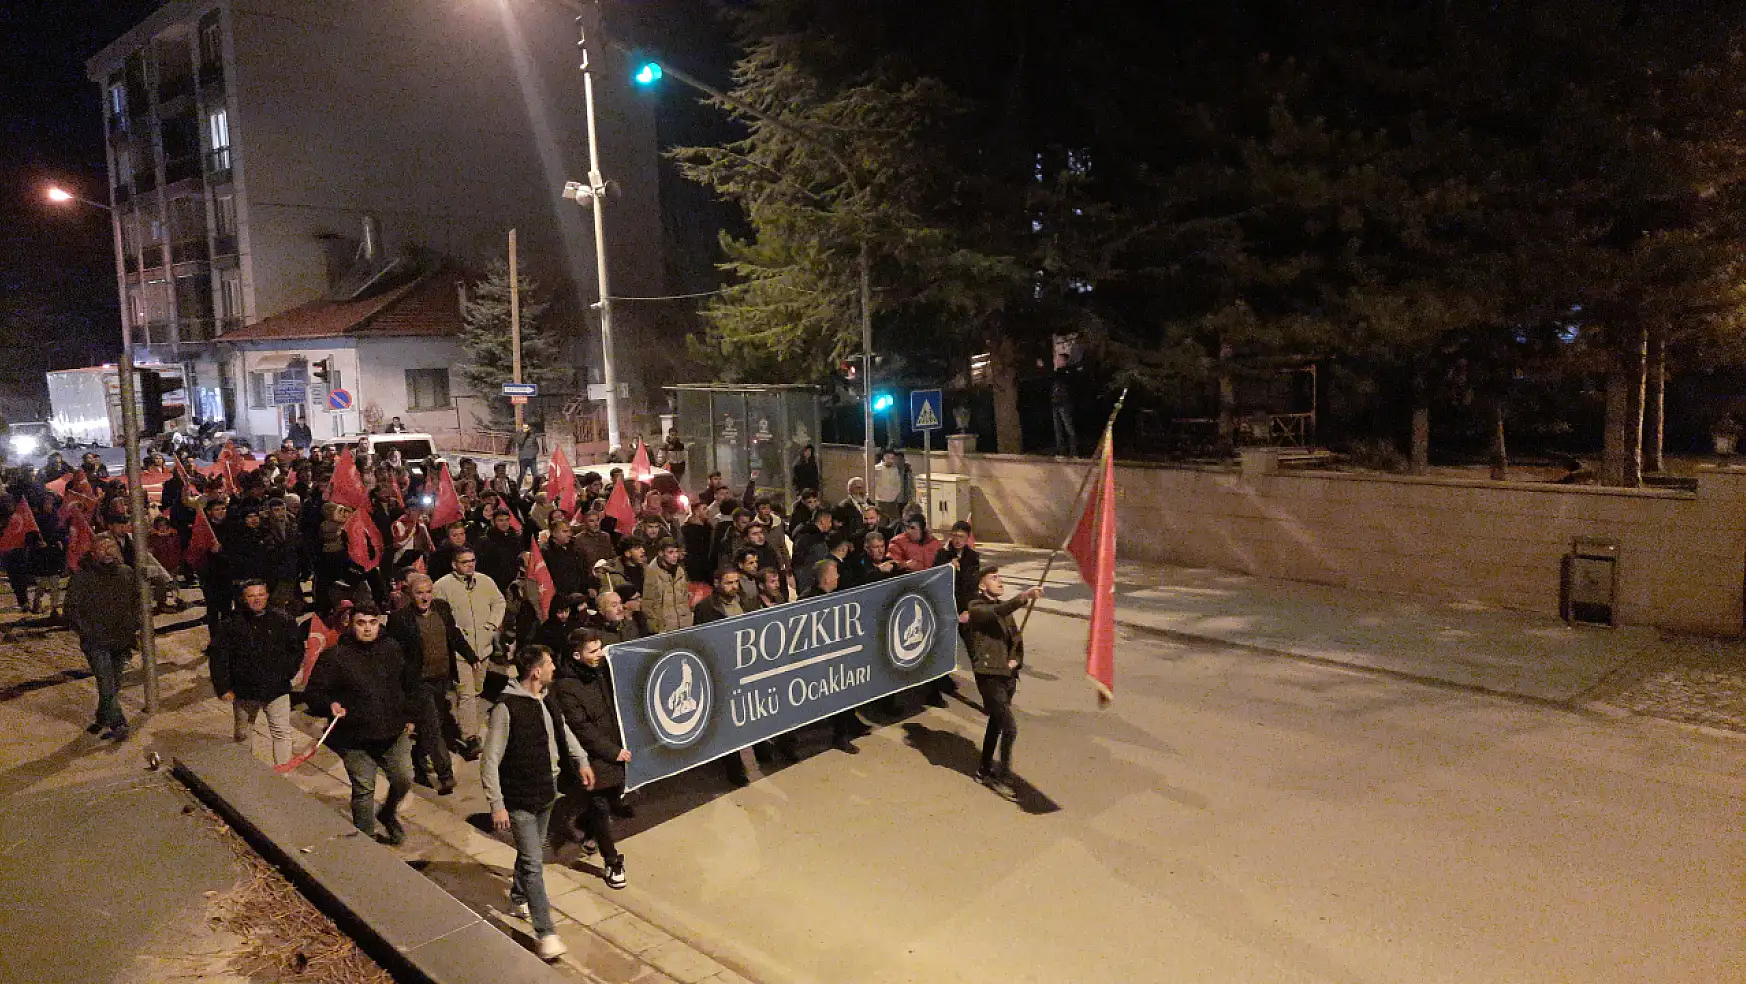 Konya'da ülkü ocaklarından şehitler için yürüyüş!